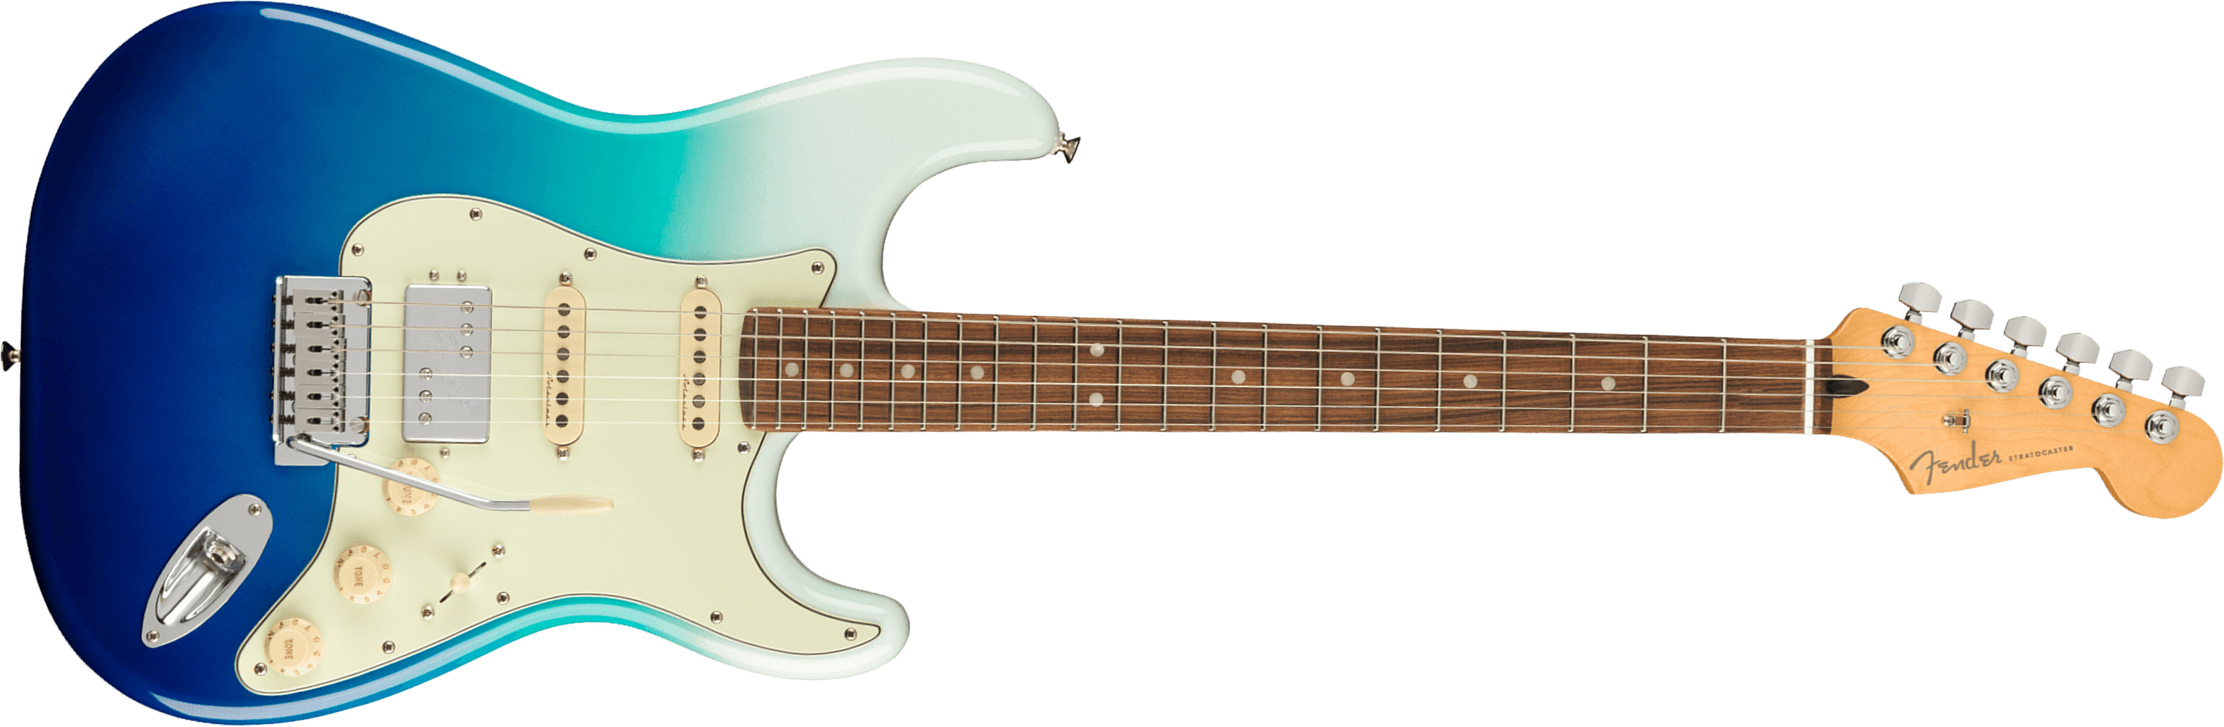 Fender Strat Player Plus Mex Hss Trem Pf - Belair Blue - Guitare Électrique Forme Str - Main picture